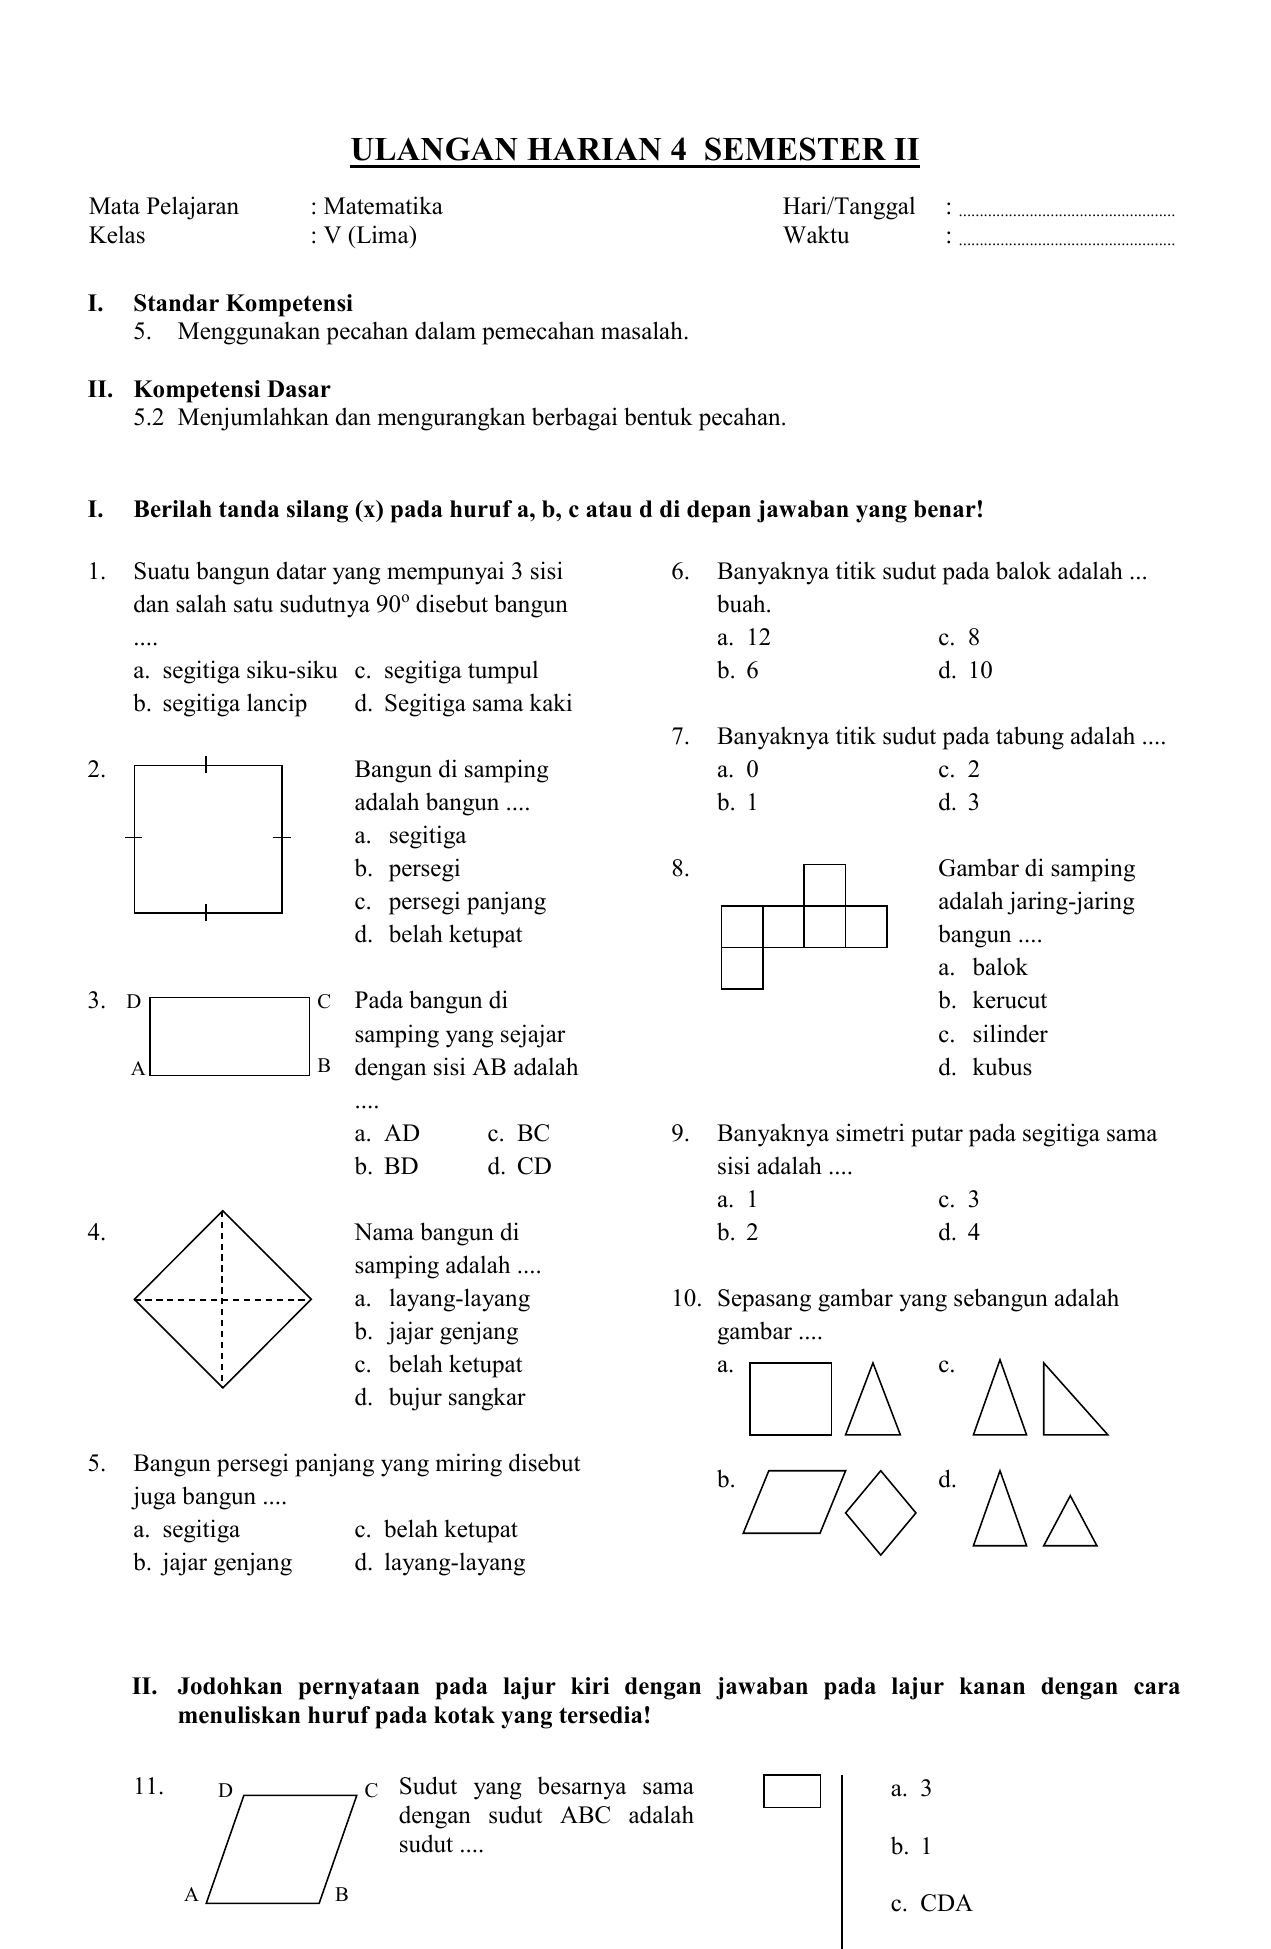 Soal Matematika Kelas Xi Persamaan Linear.doc Pendidik Siswa